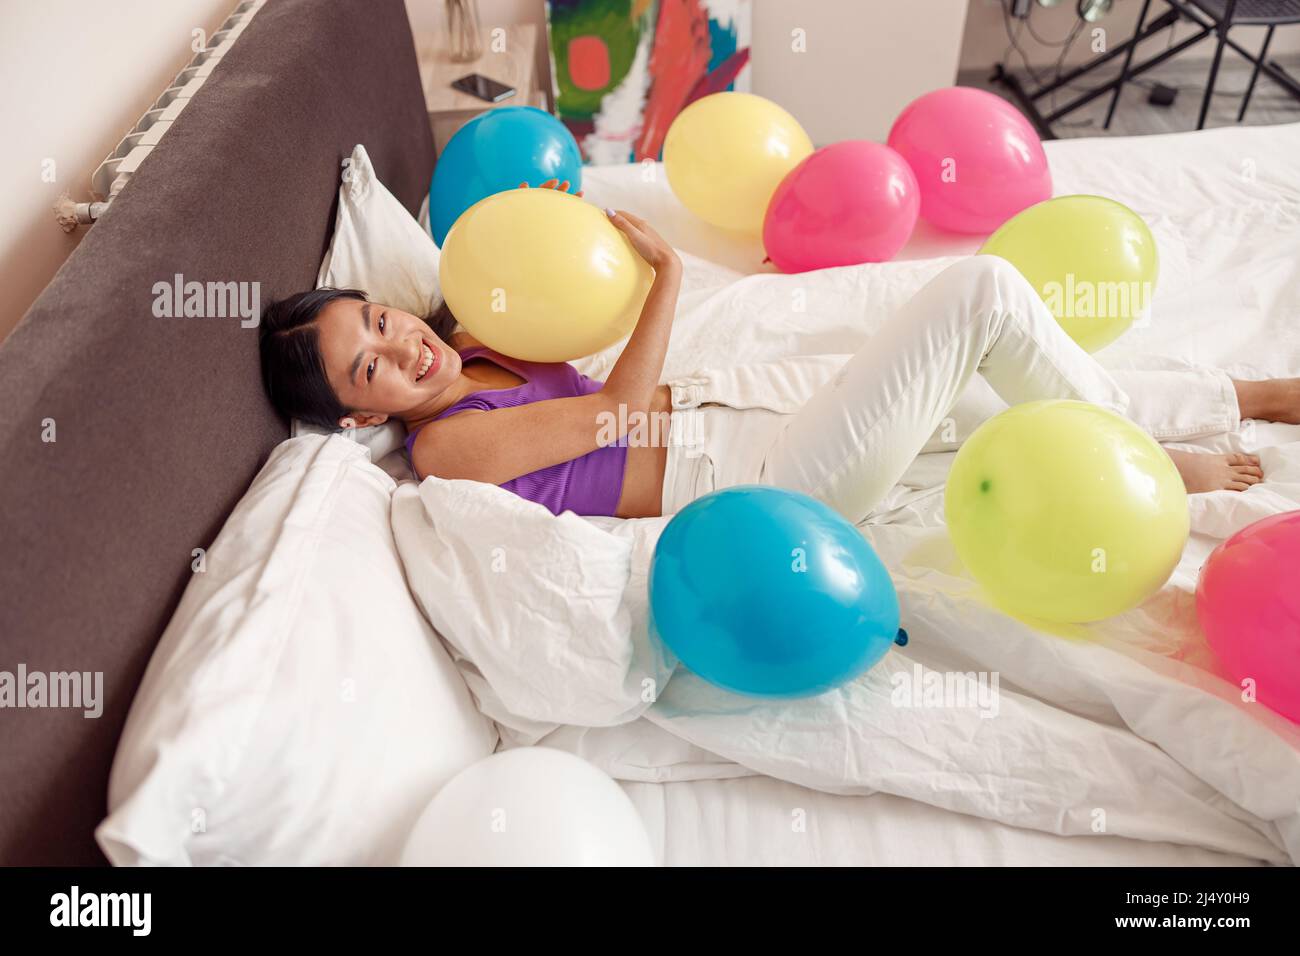 Fröhliche asiatische Frau, die im Bett mit bunten Ballons liegt Stockfoto